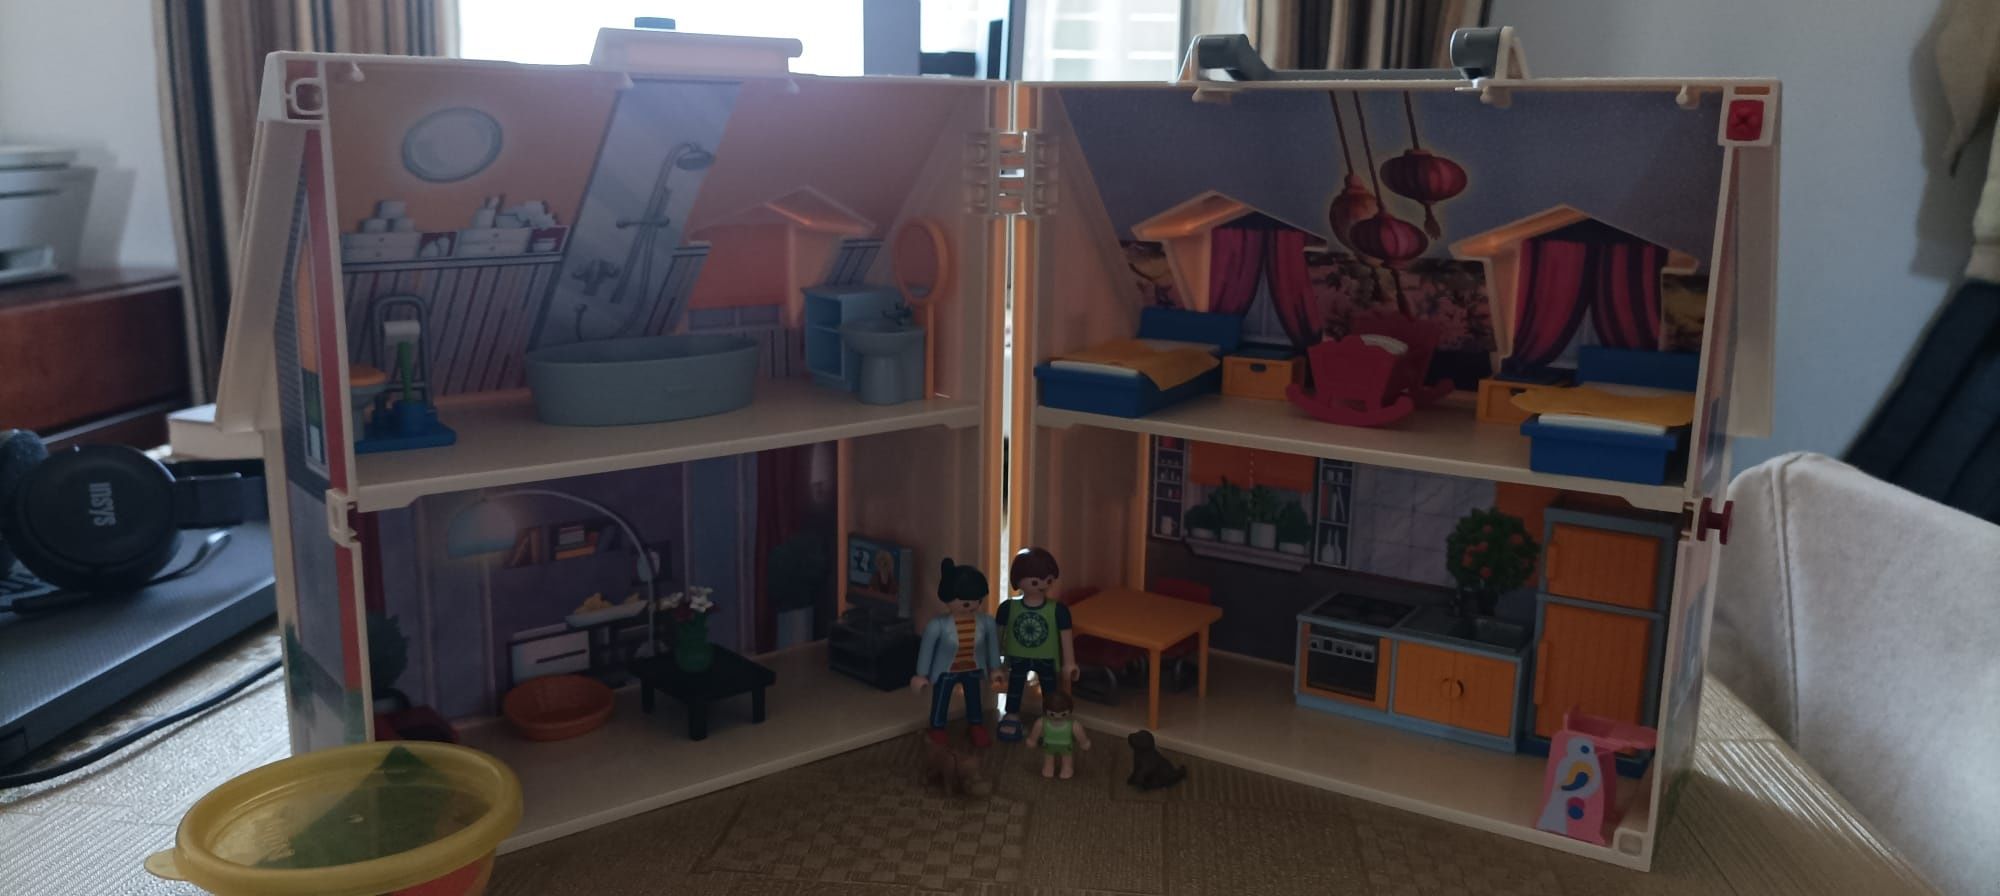 Casa Playmobil com acessórios como nova